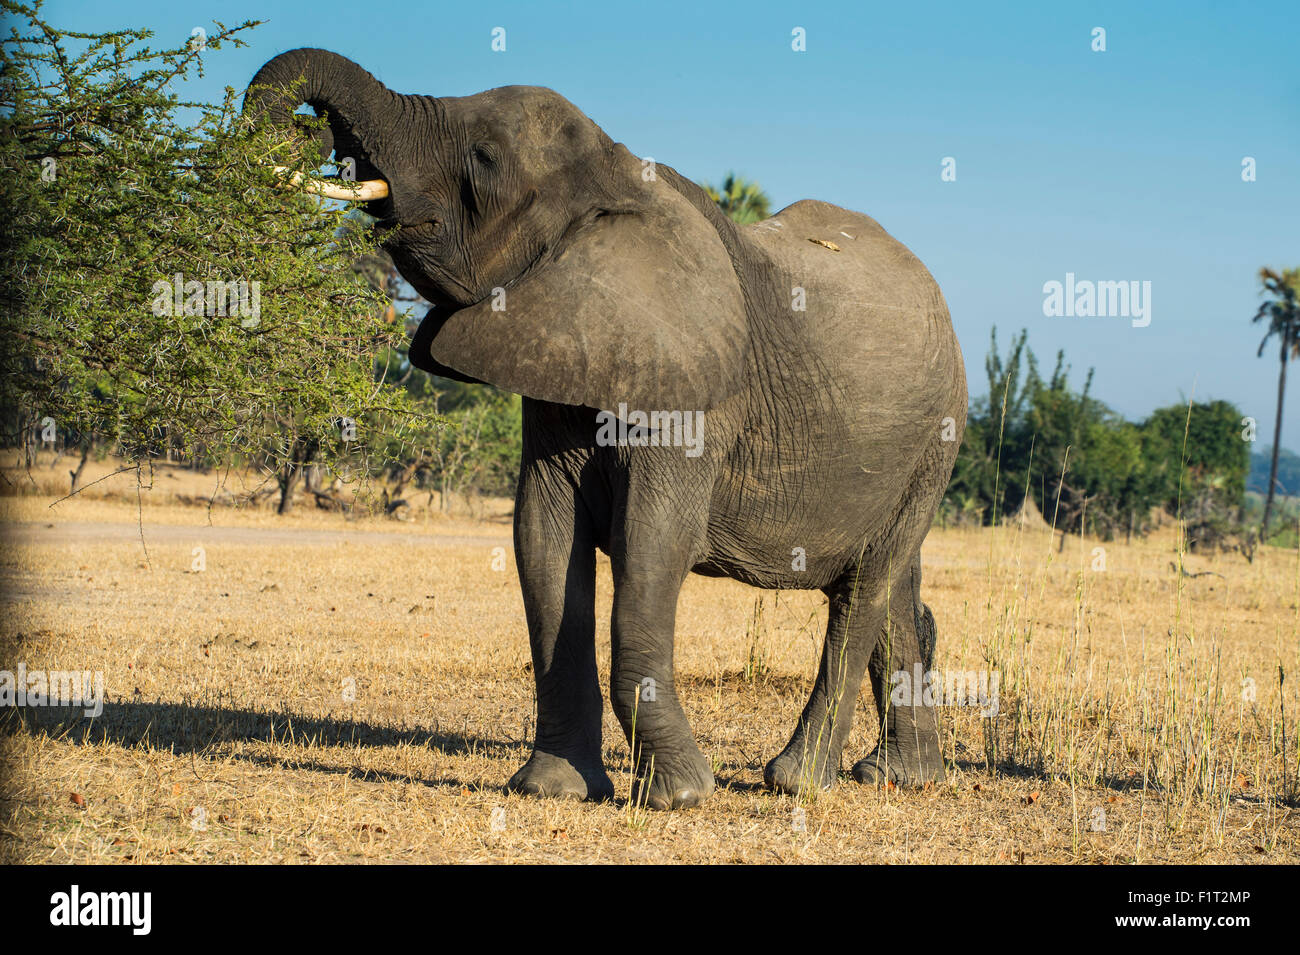 Bush africain elephant (Loxodonta africana) de manger d'un arbre, le Parc National de Liwonde, Malawi, Afrique Banque D'Images